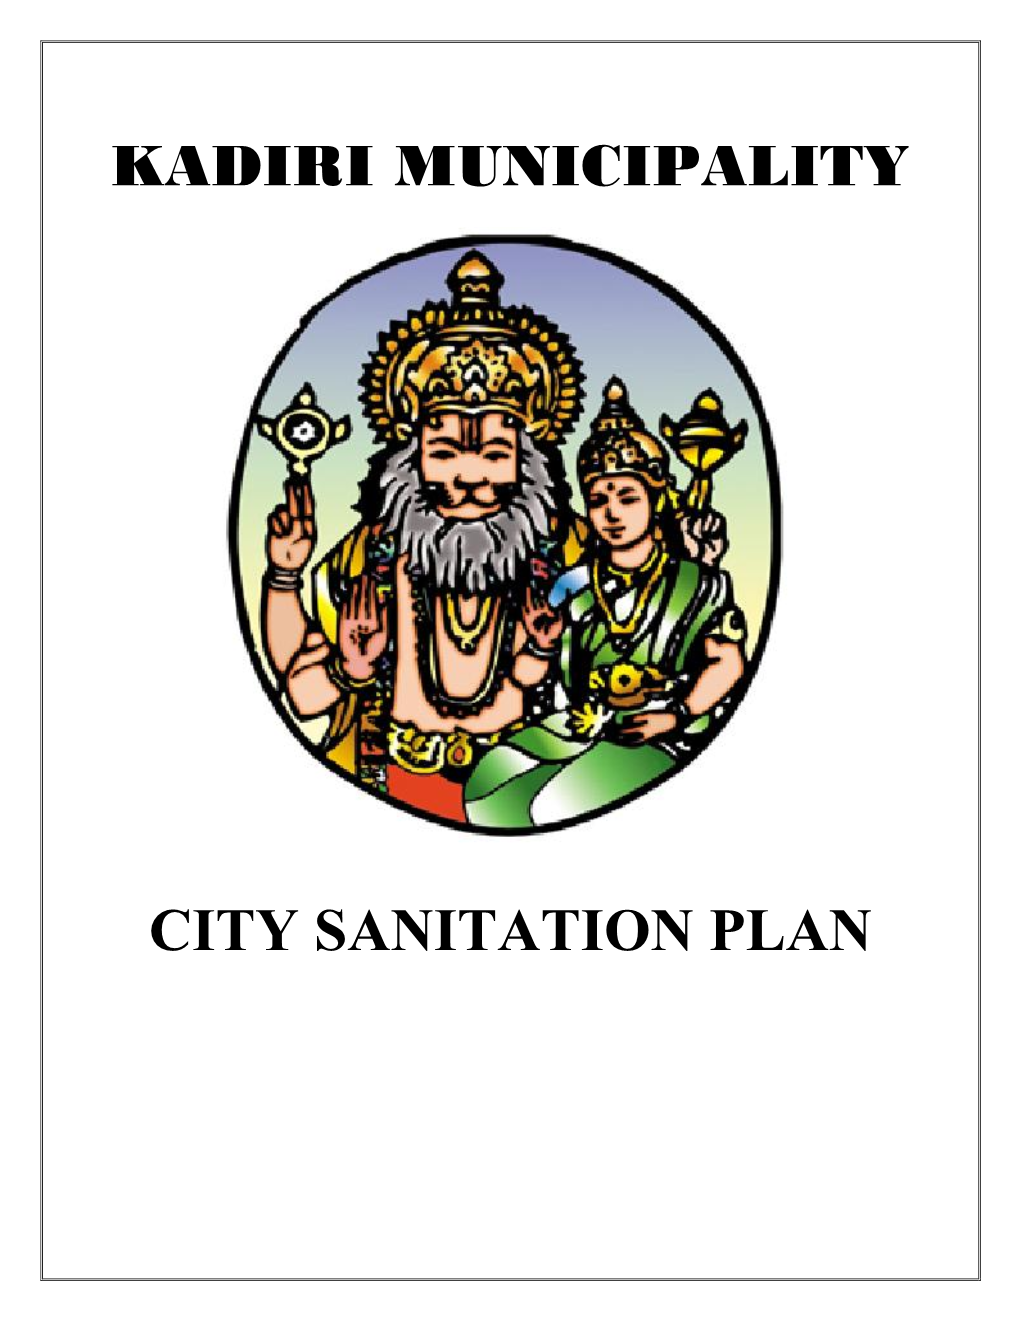 Kadiri Municipality City Sanitation Plan